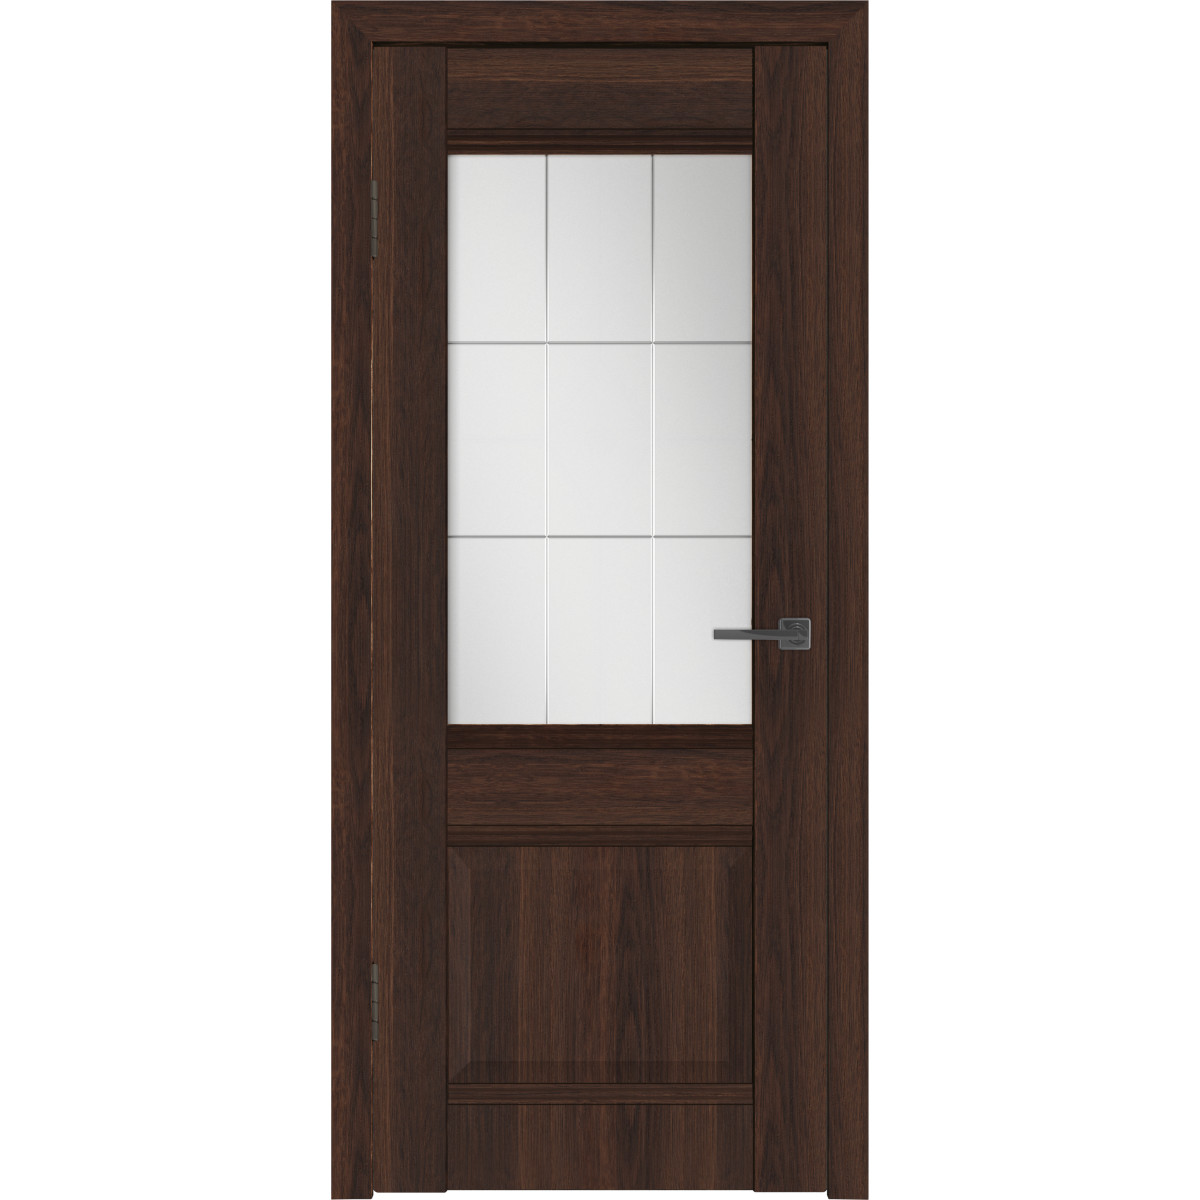 Дверь межкомнатная остекленная с замком и петлями в комплекте Классик 2 90x200 см ПВХ цвет каштан